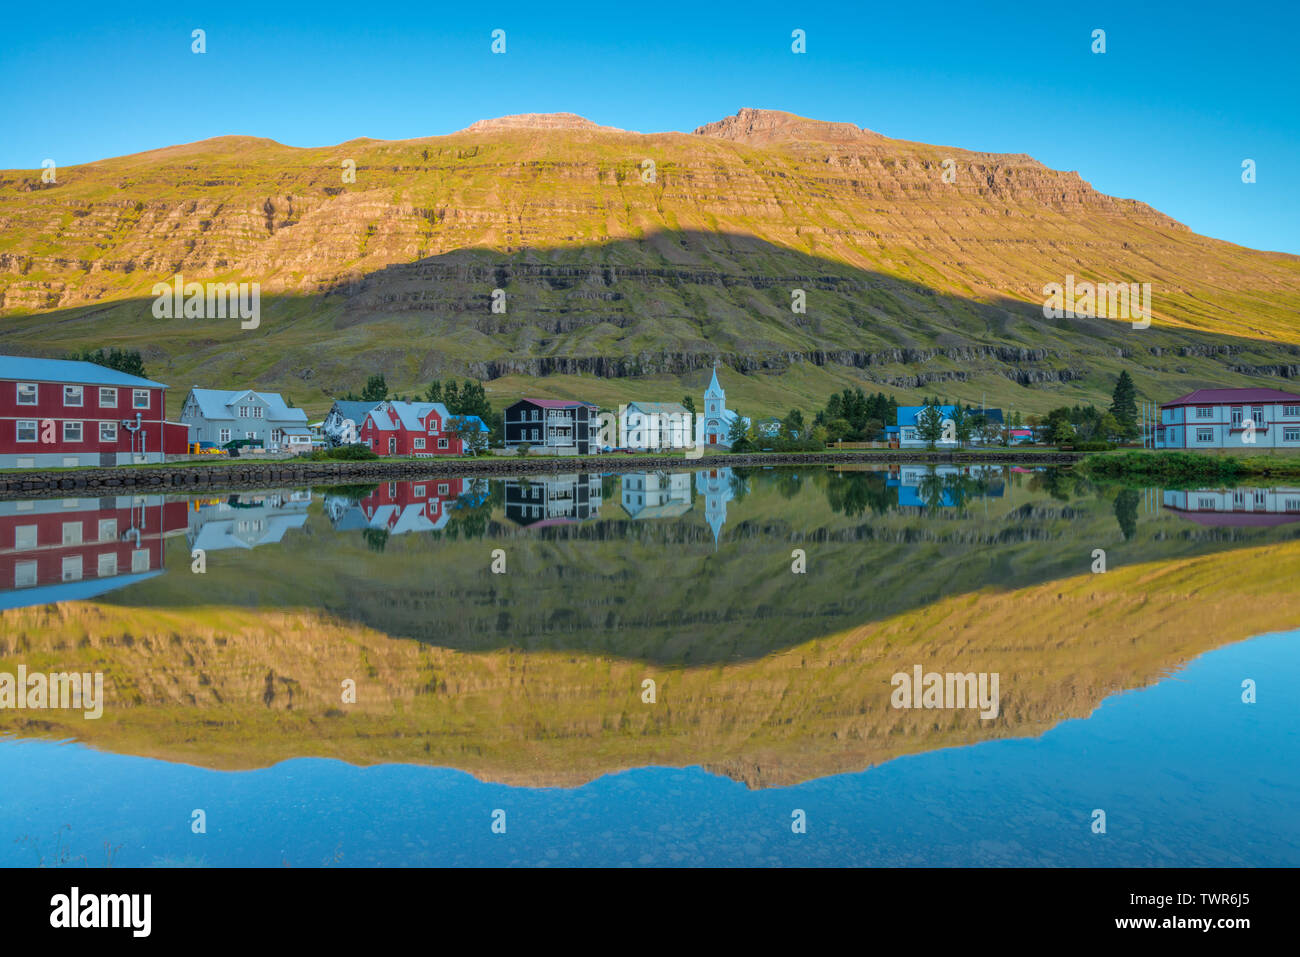 Perfekte Wasser Reflexion, perfekte gespiegeltes Bild einer Isländischen fjord Stadt im Wasser, sunrise Reflexion mit perfekten Berg Schatten im Fjord Stockfoto